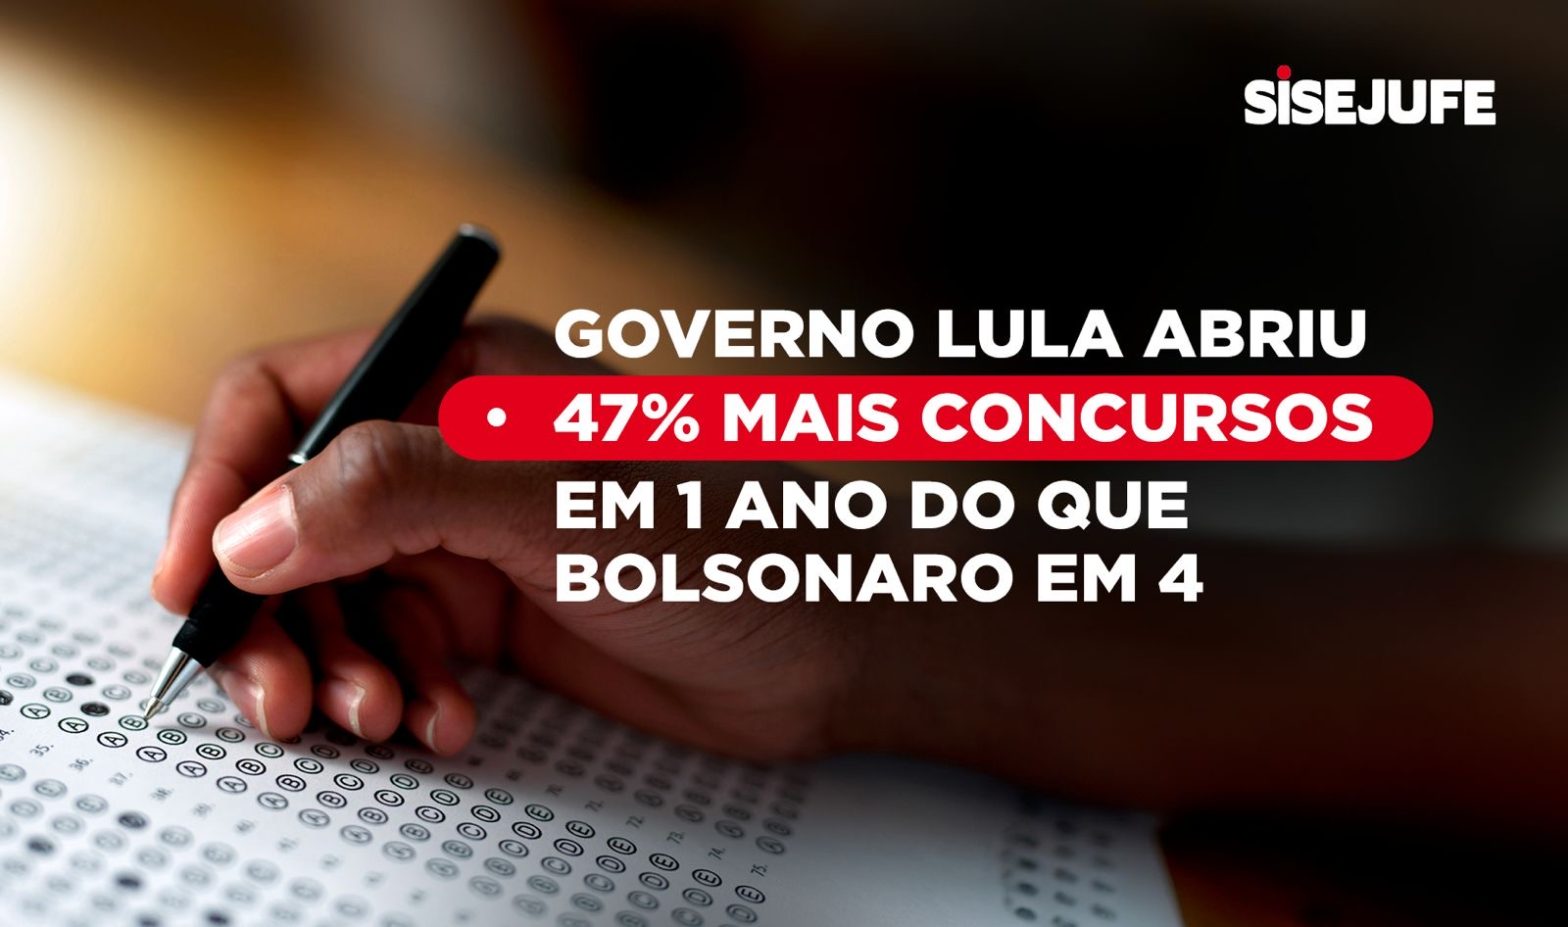 Governo Lula abriu 47% mais concursos em 1 ano do que Bolsonaro em 4, SISEJUFE